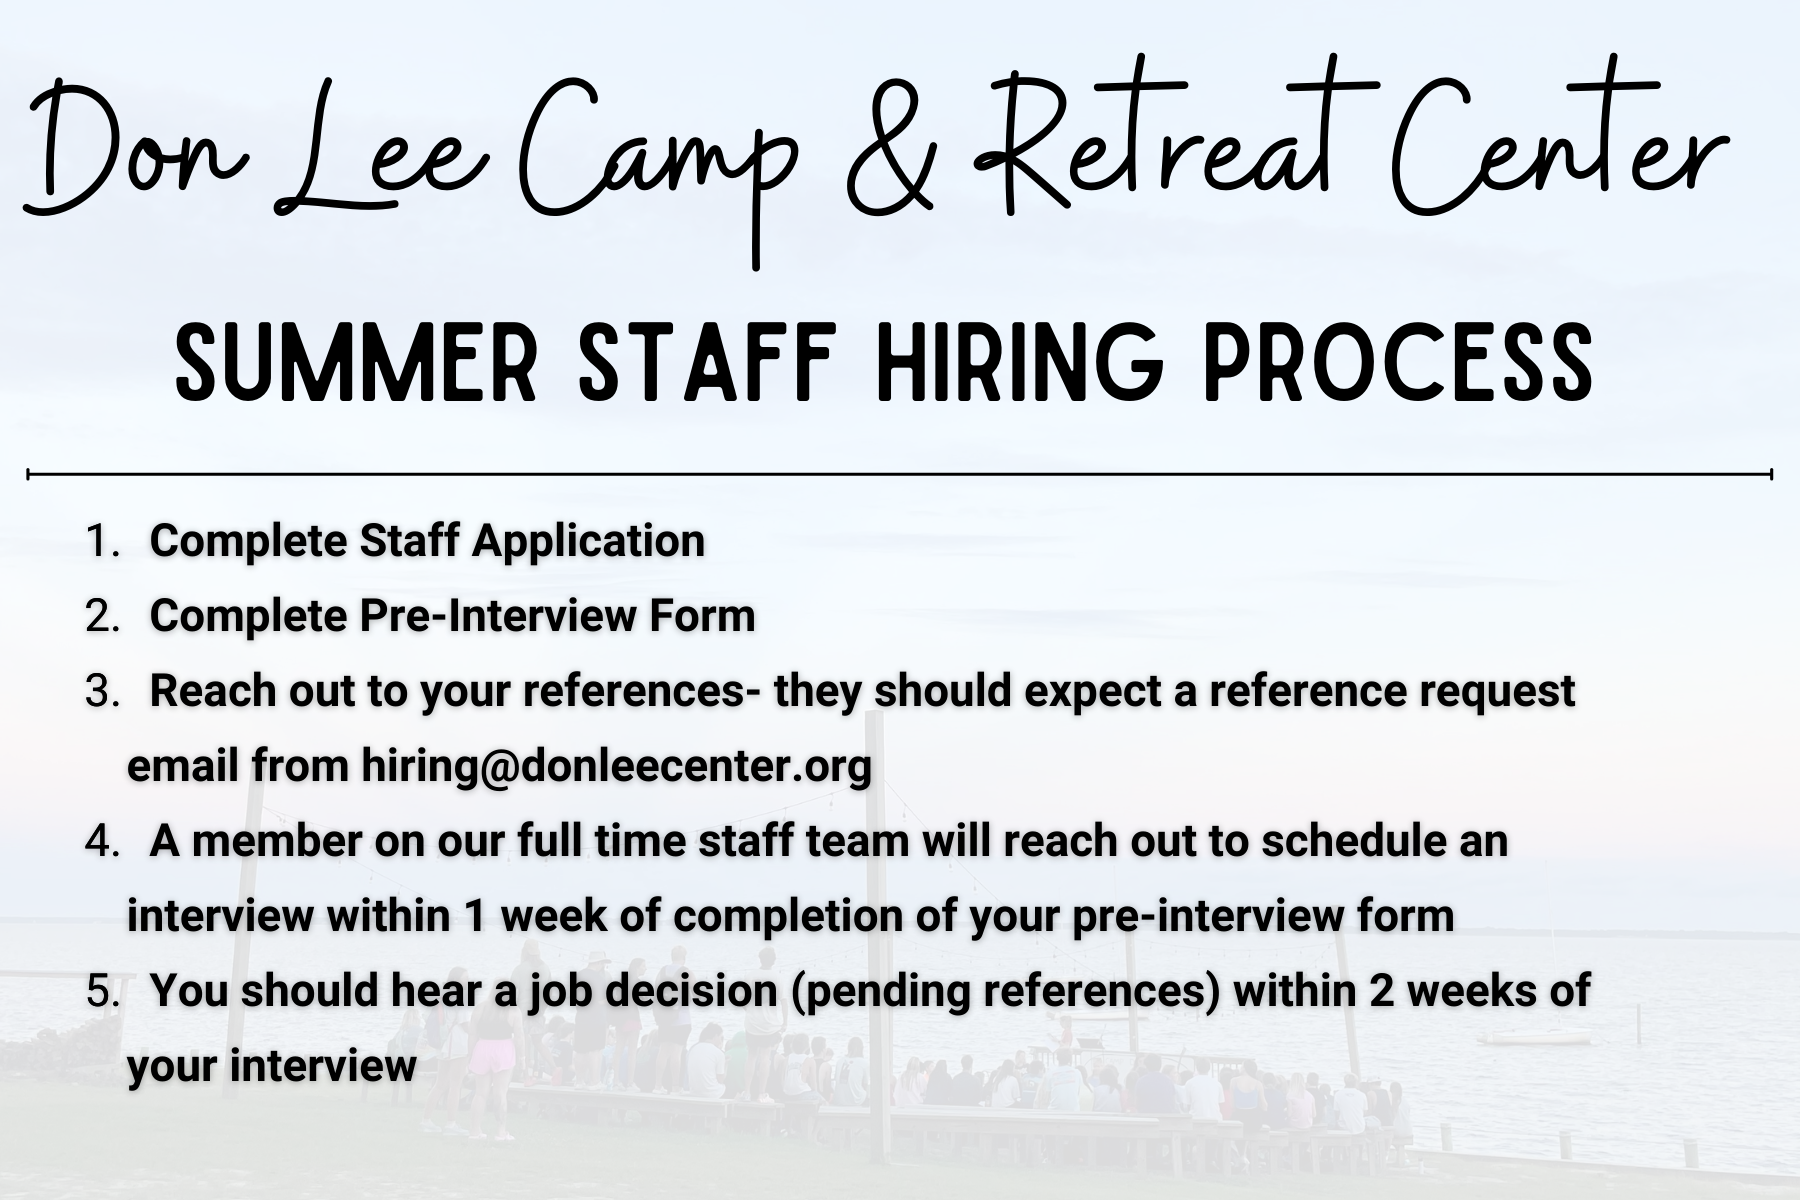 Don Lee Camp & Retreat Center Summer Staff Hiring Process